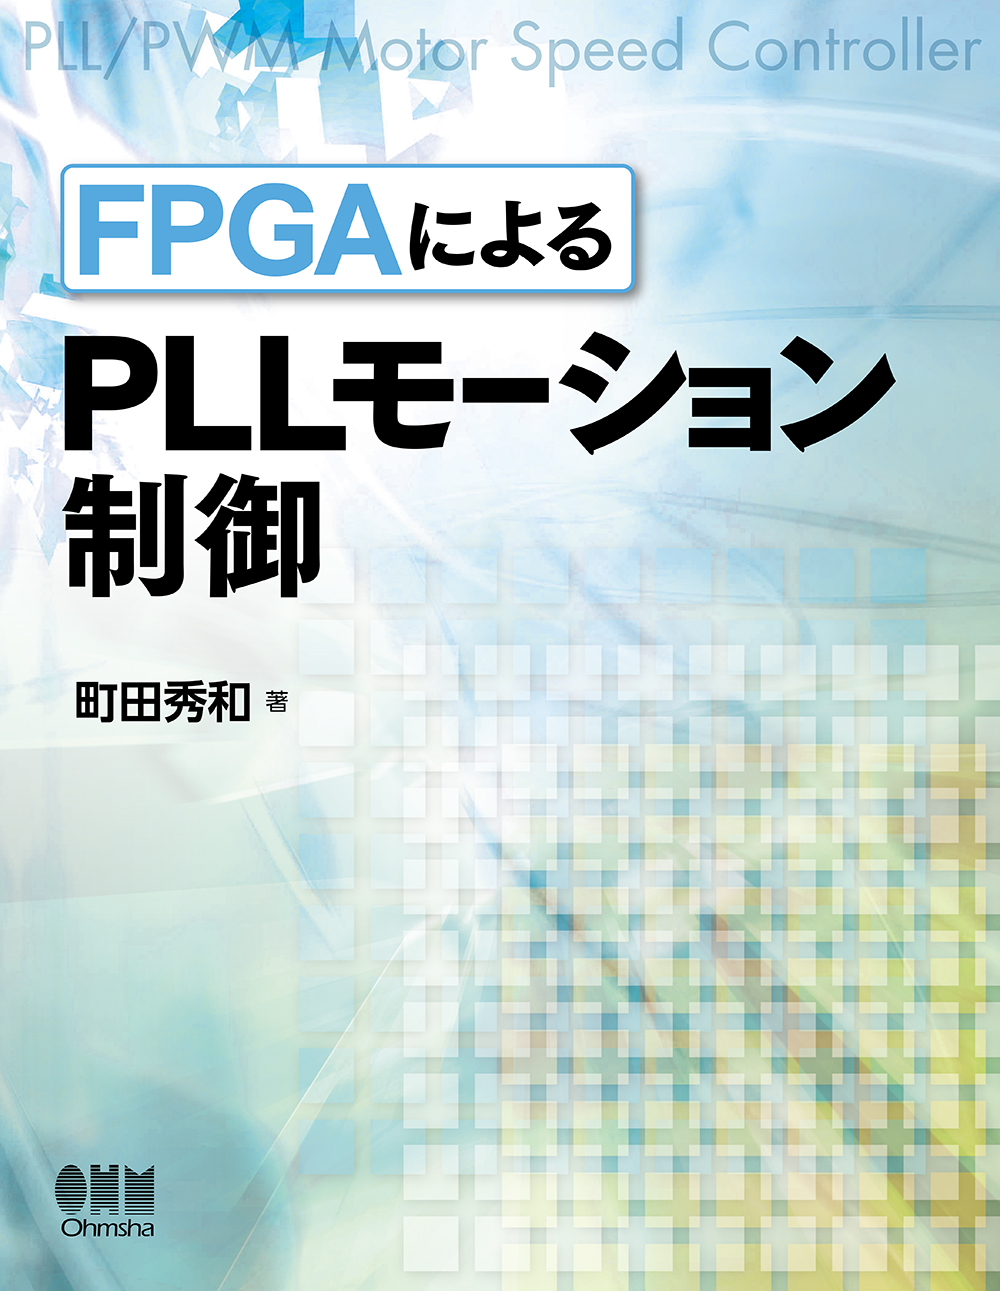 FPGAによるPLLモーション制御の商品画像